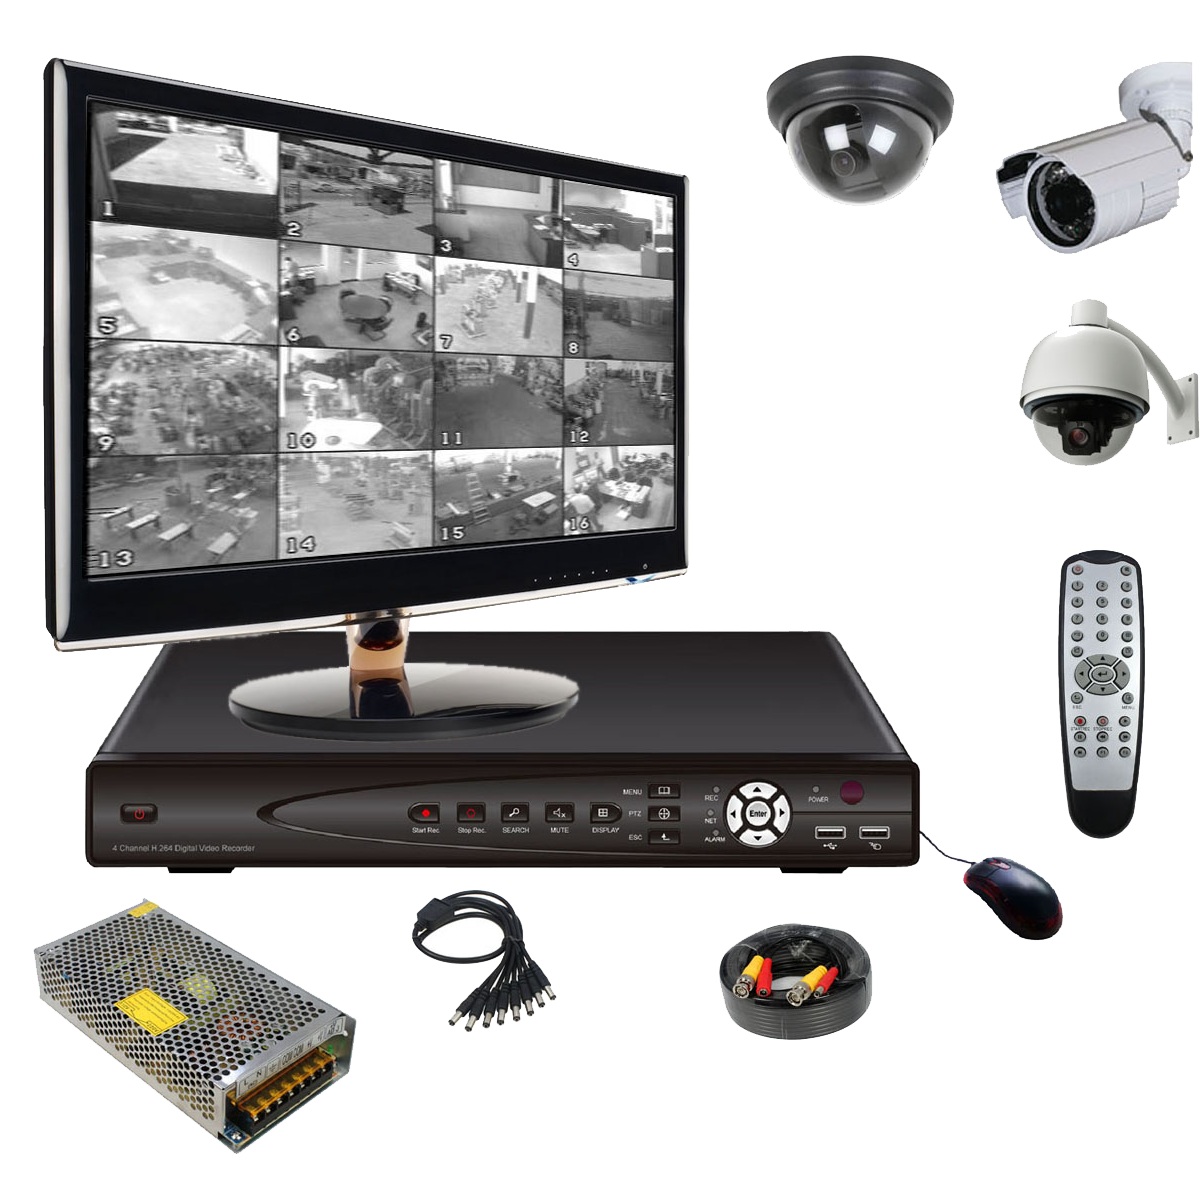 Принцип работы систем видеонаблюдения